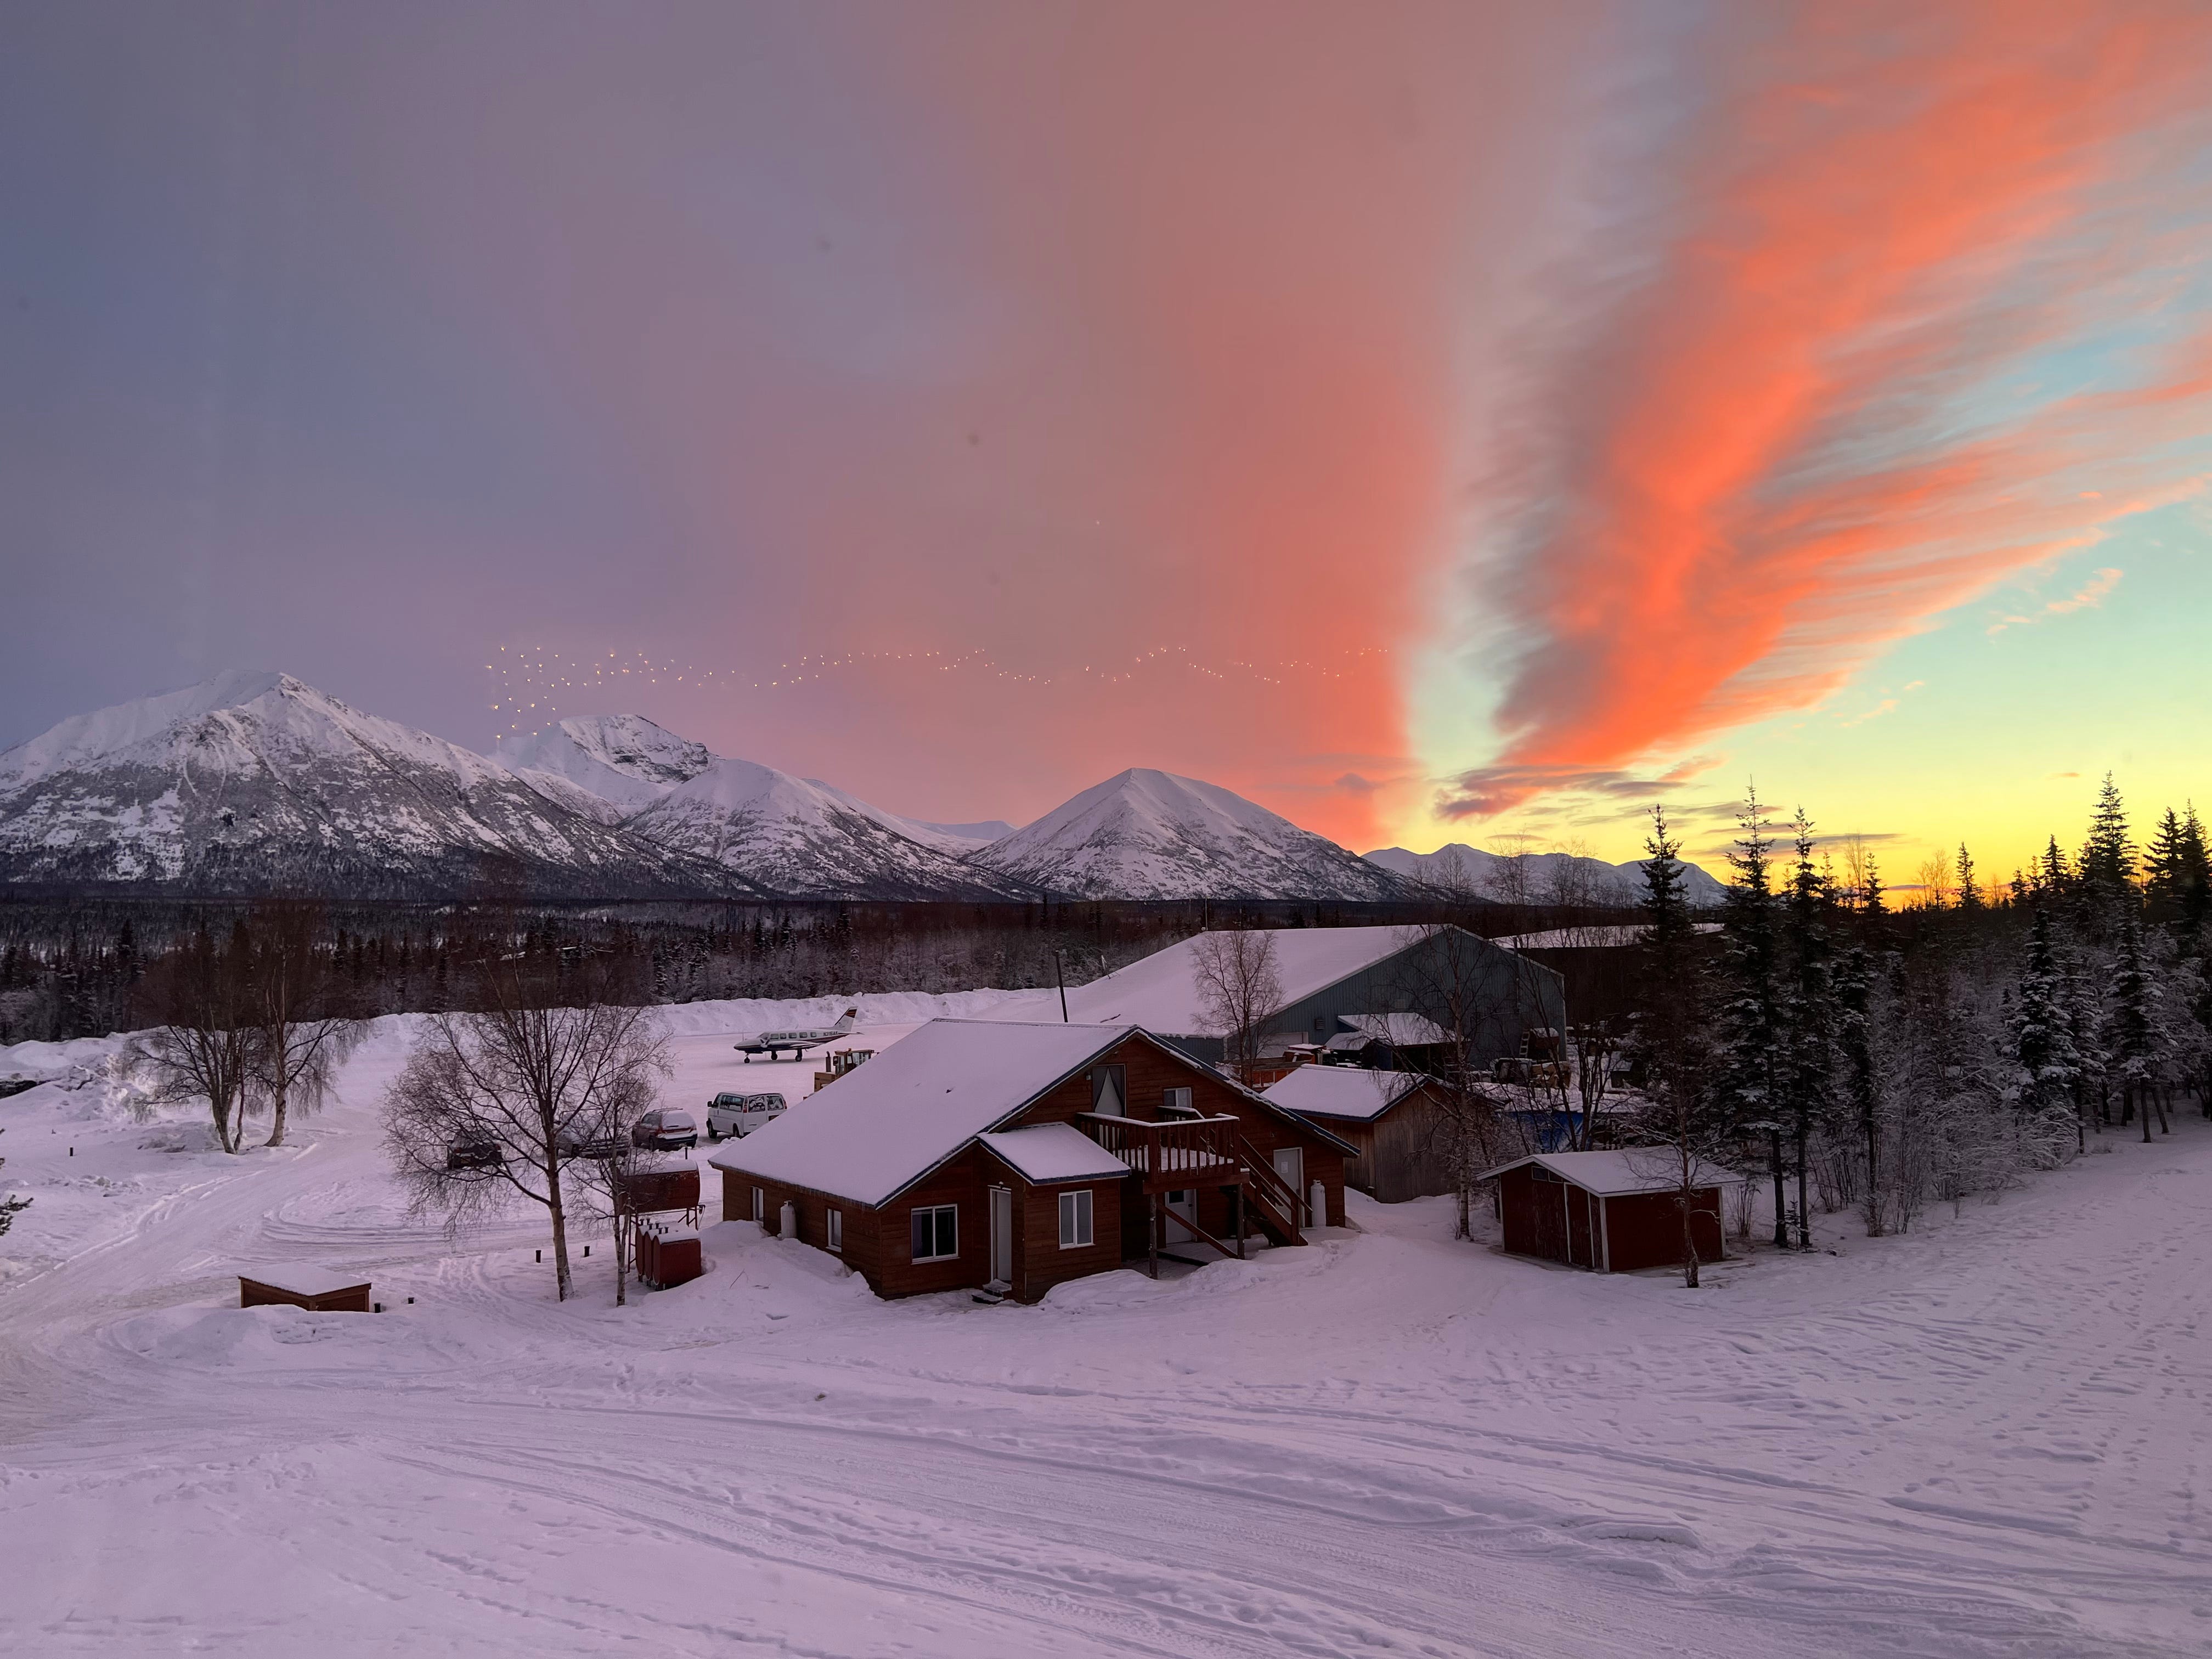 Sonnenuntergang über einer abgelegenen Stadt in Alaska